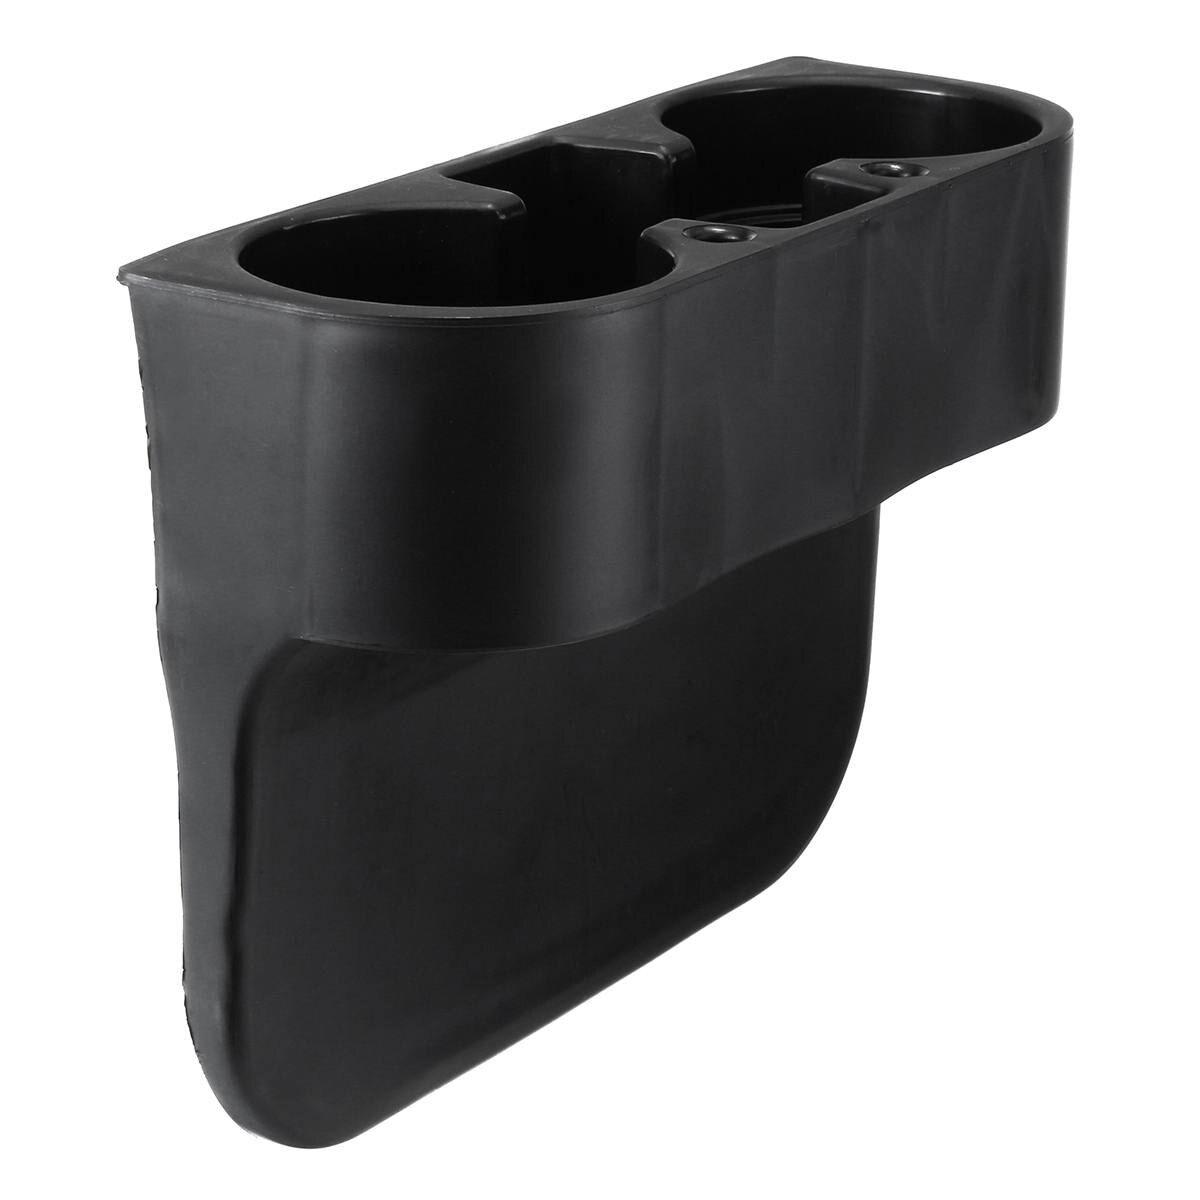 Gris pour Bmw E46 3 Series Porte-gobelet de voiture Porte-gobelets Kit De  boîte à eau Porte-gobelets